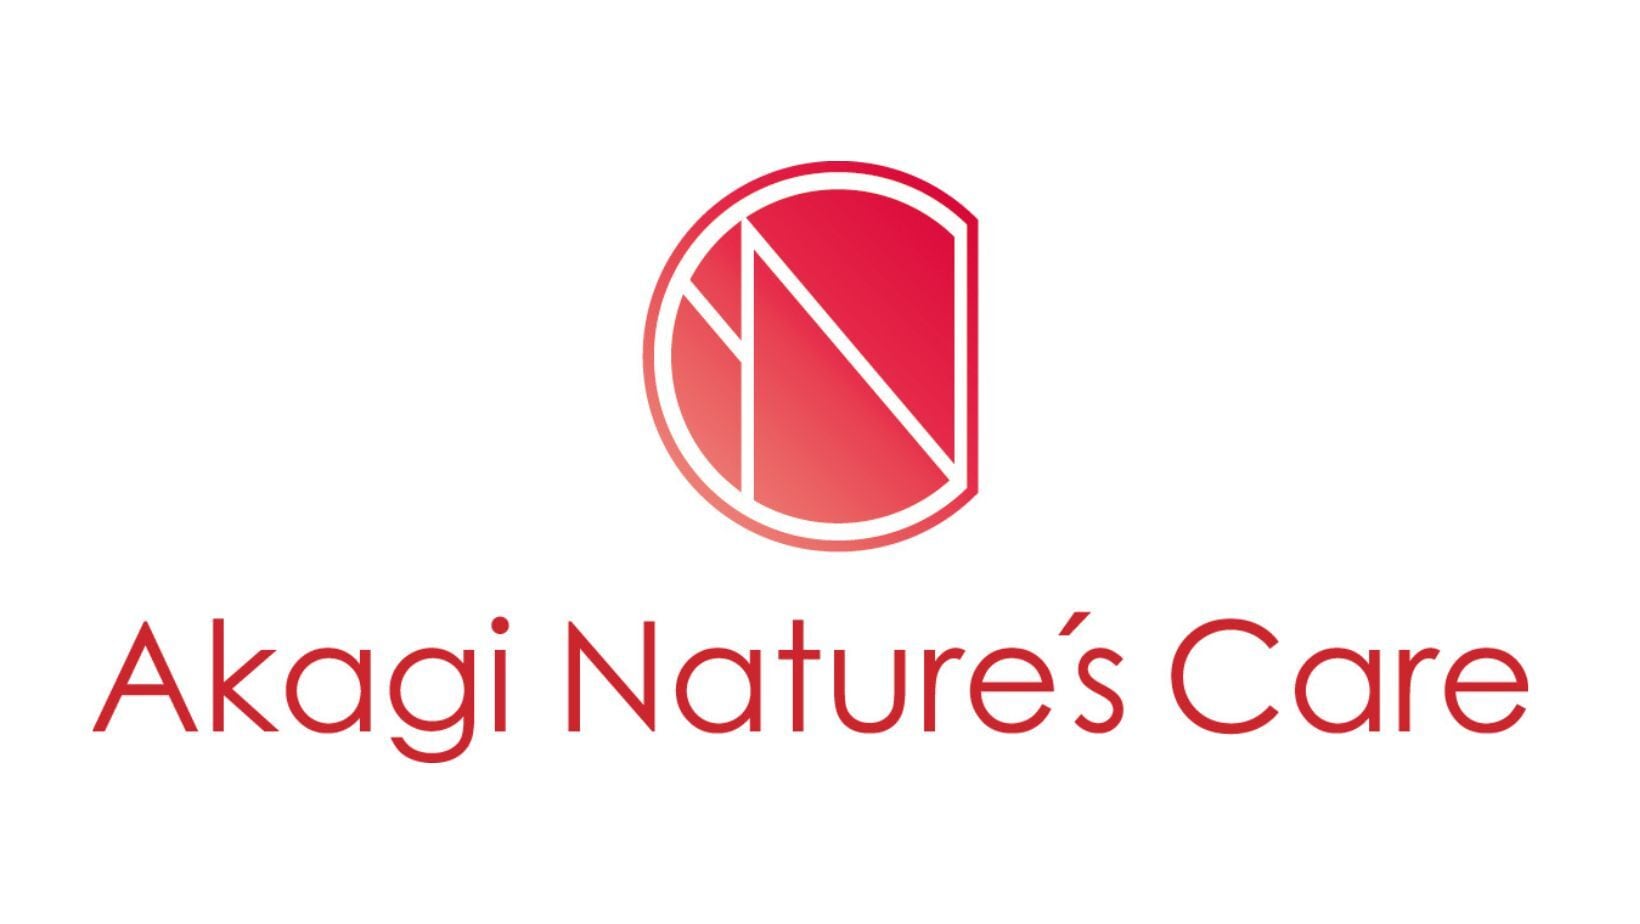 Akagi Nature's Care